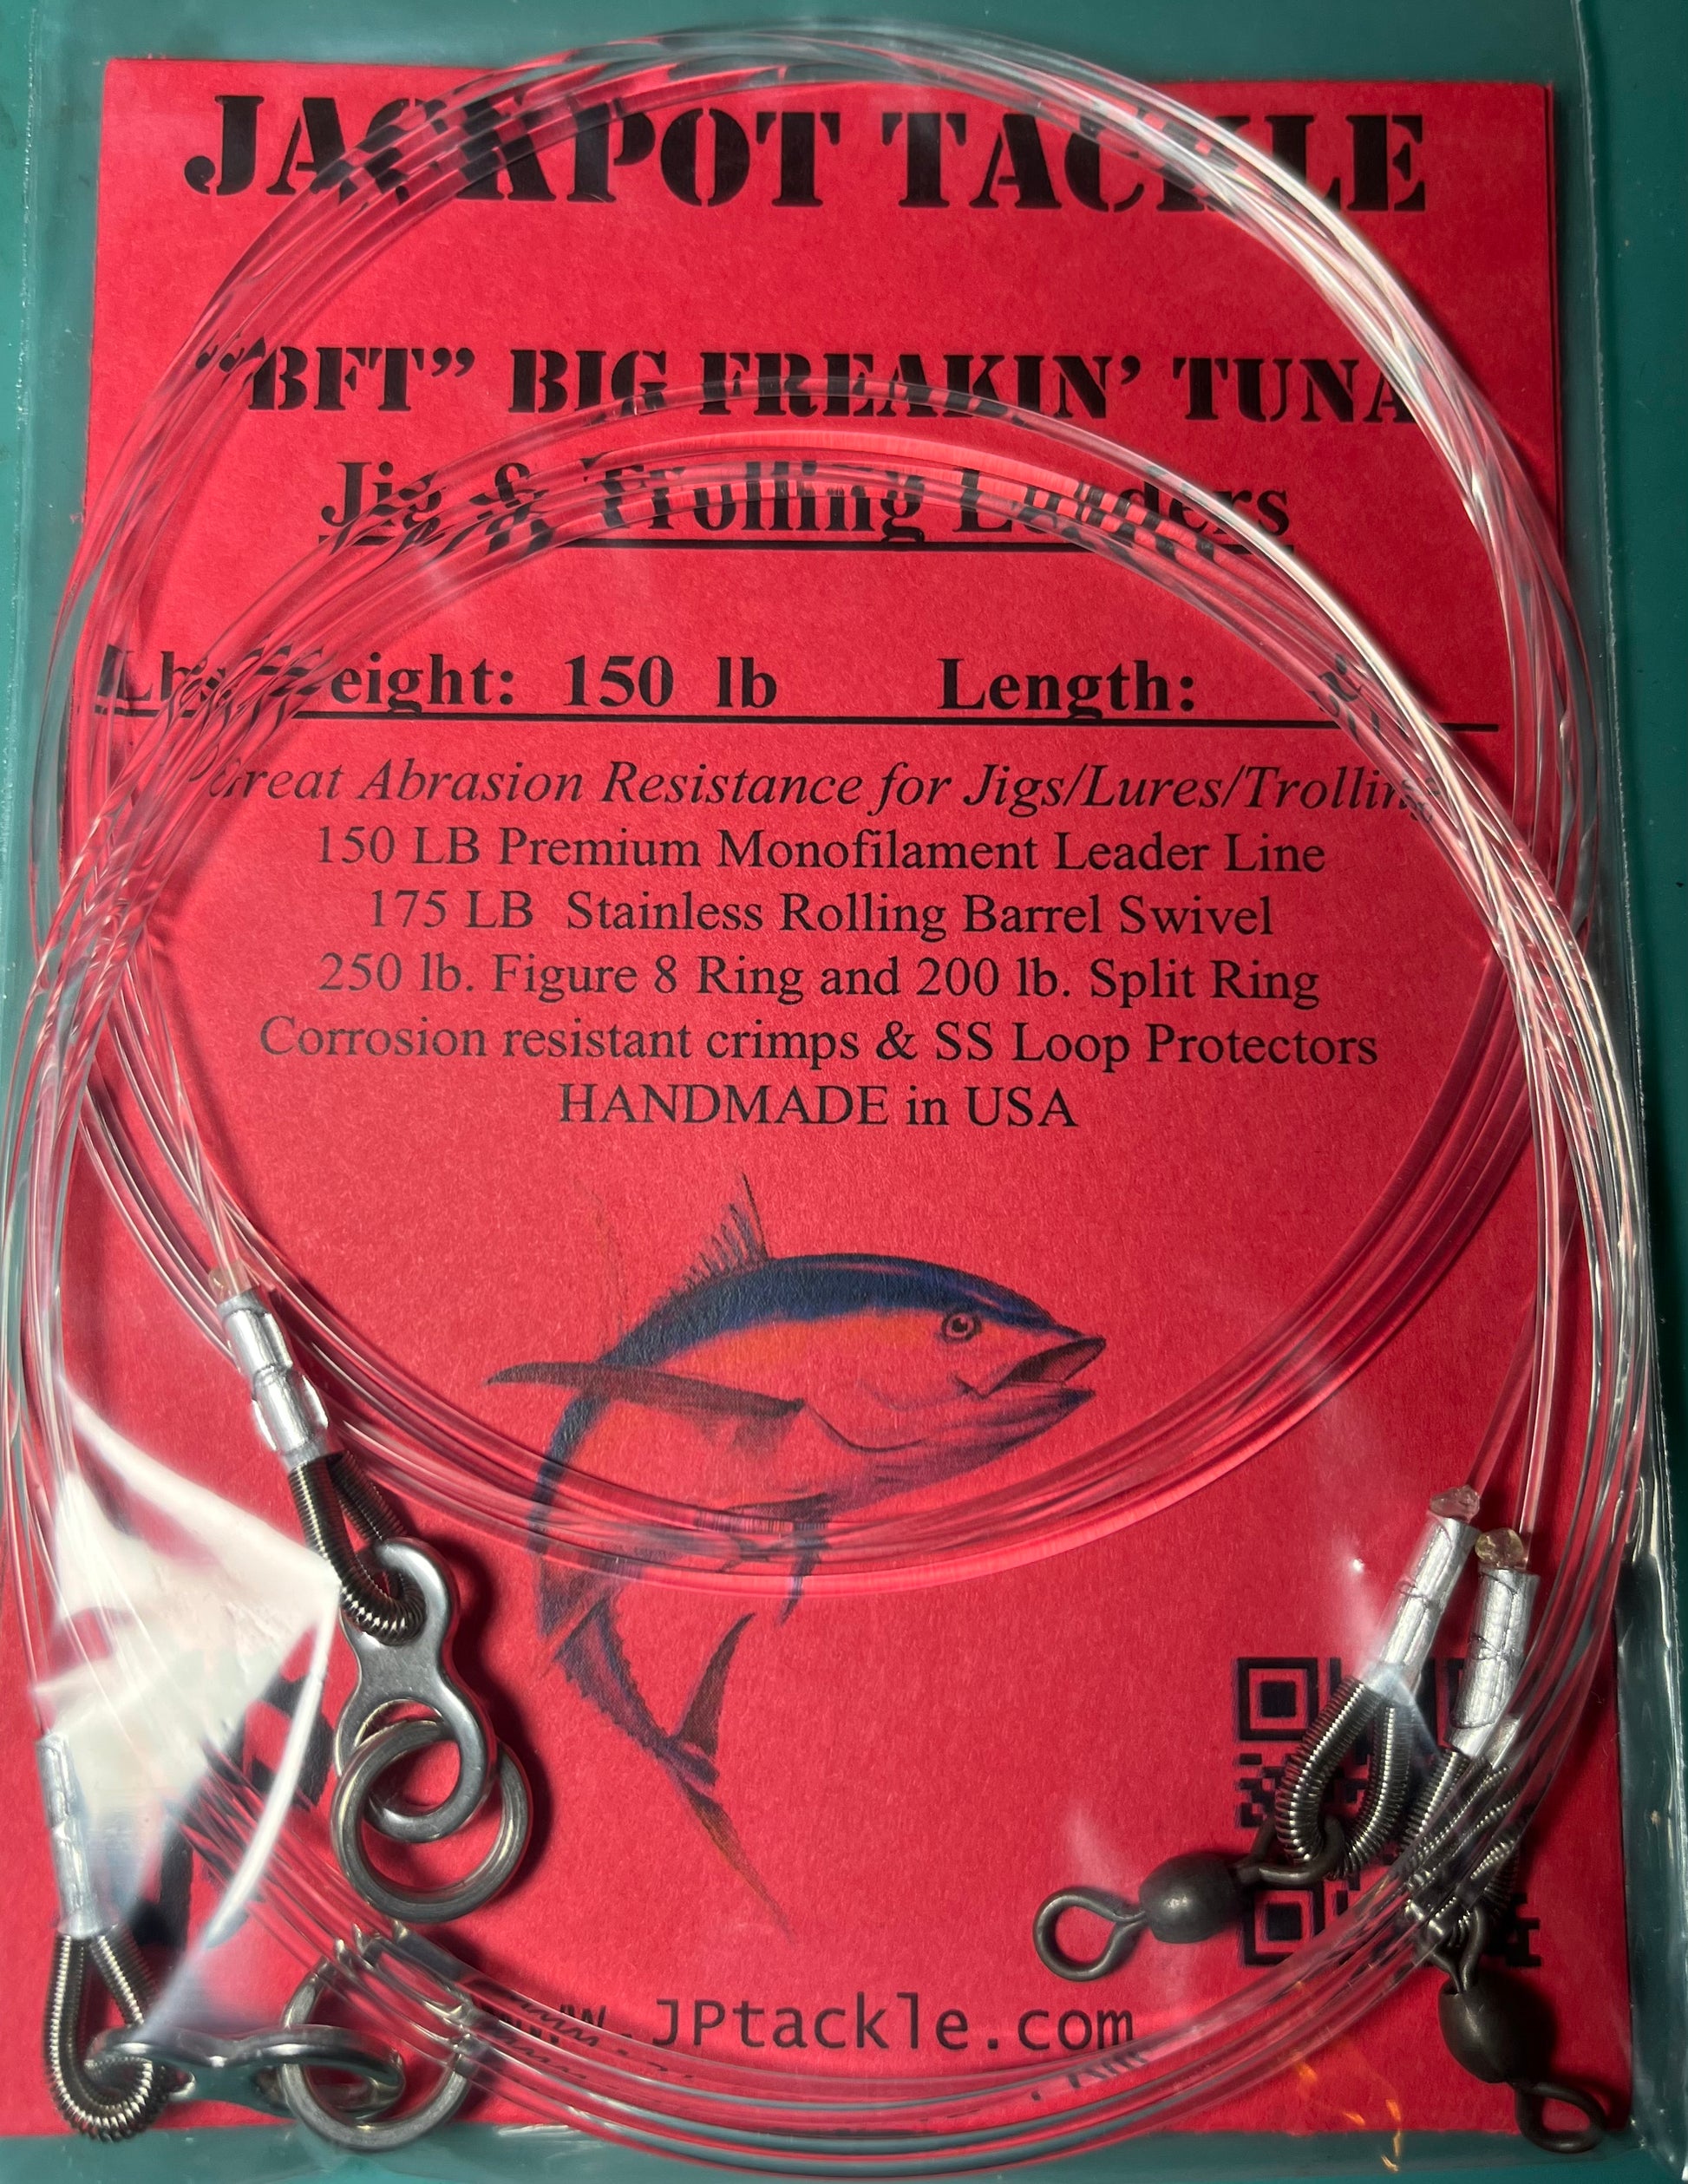 BFT” 150 lb. 5' Big Freakin' Tuna Jig/Lure Leaders (2 Pack